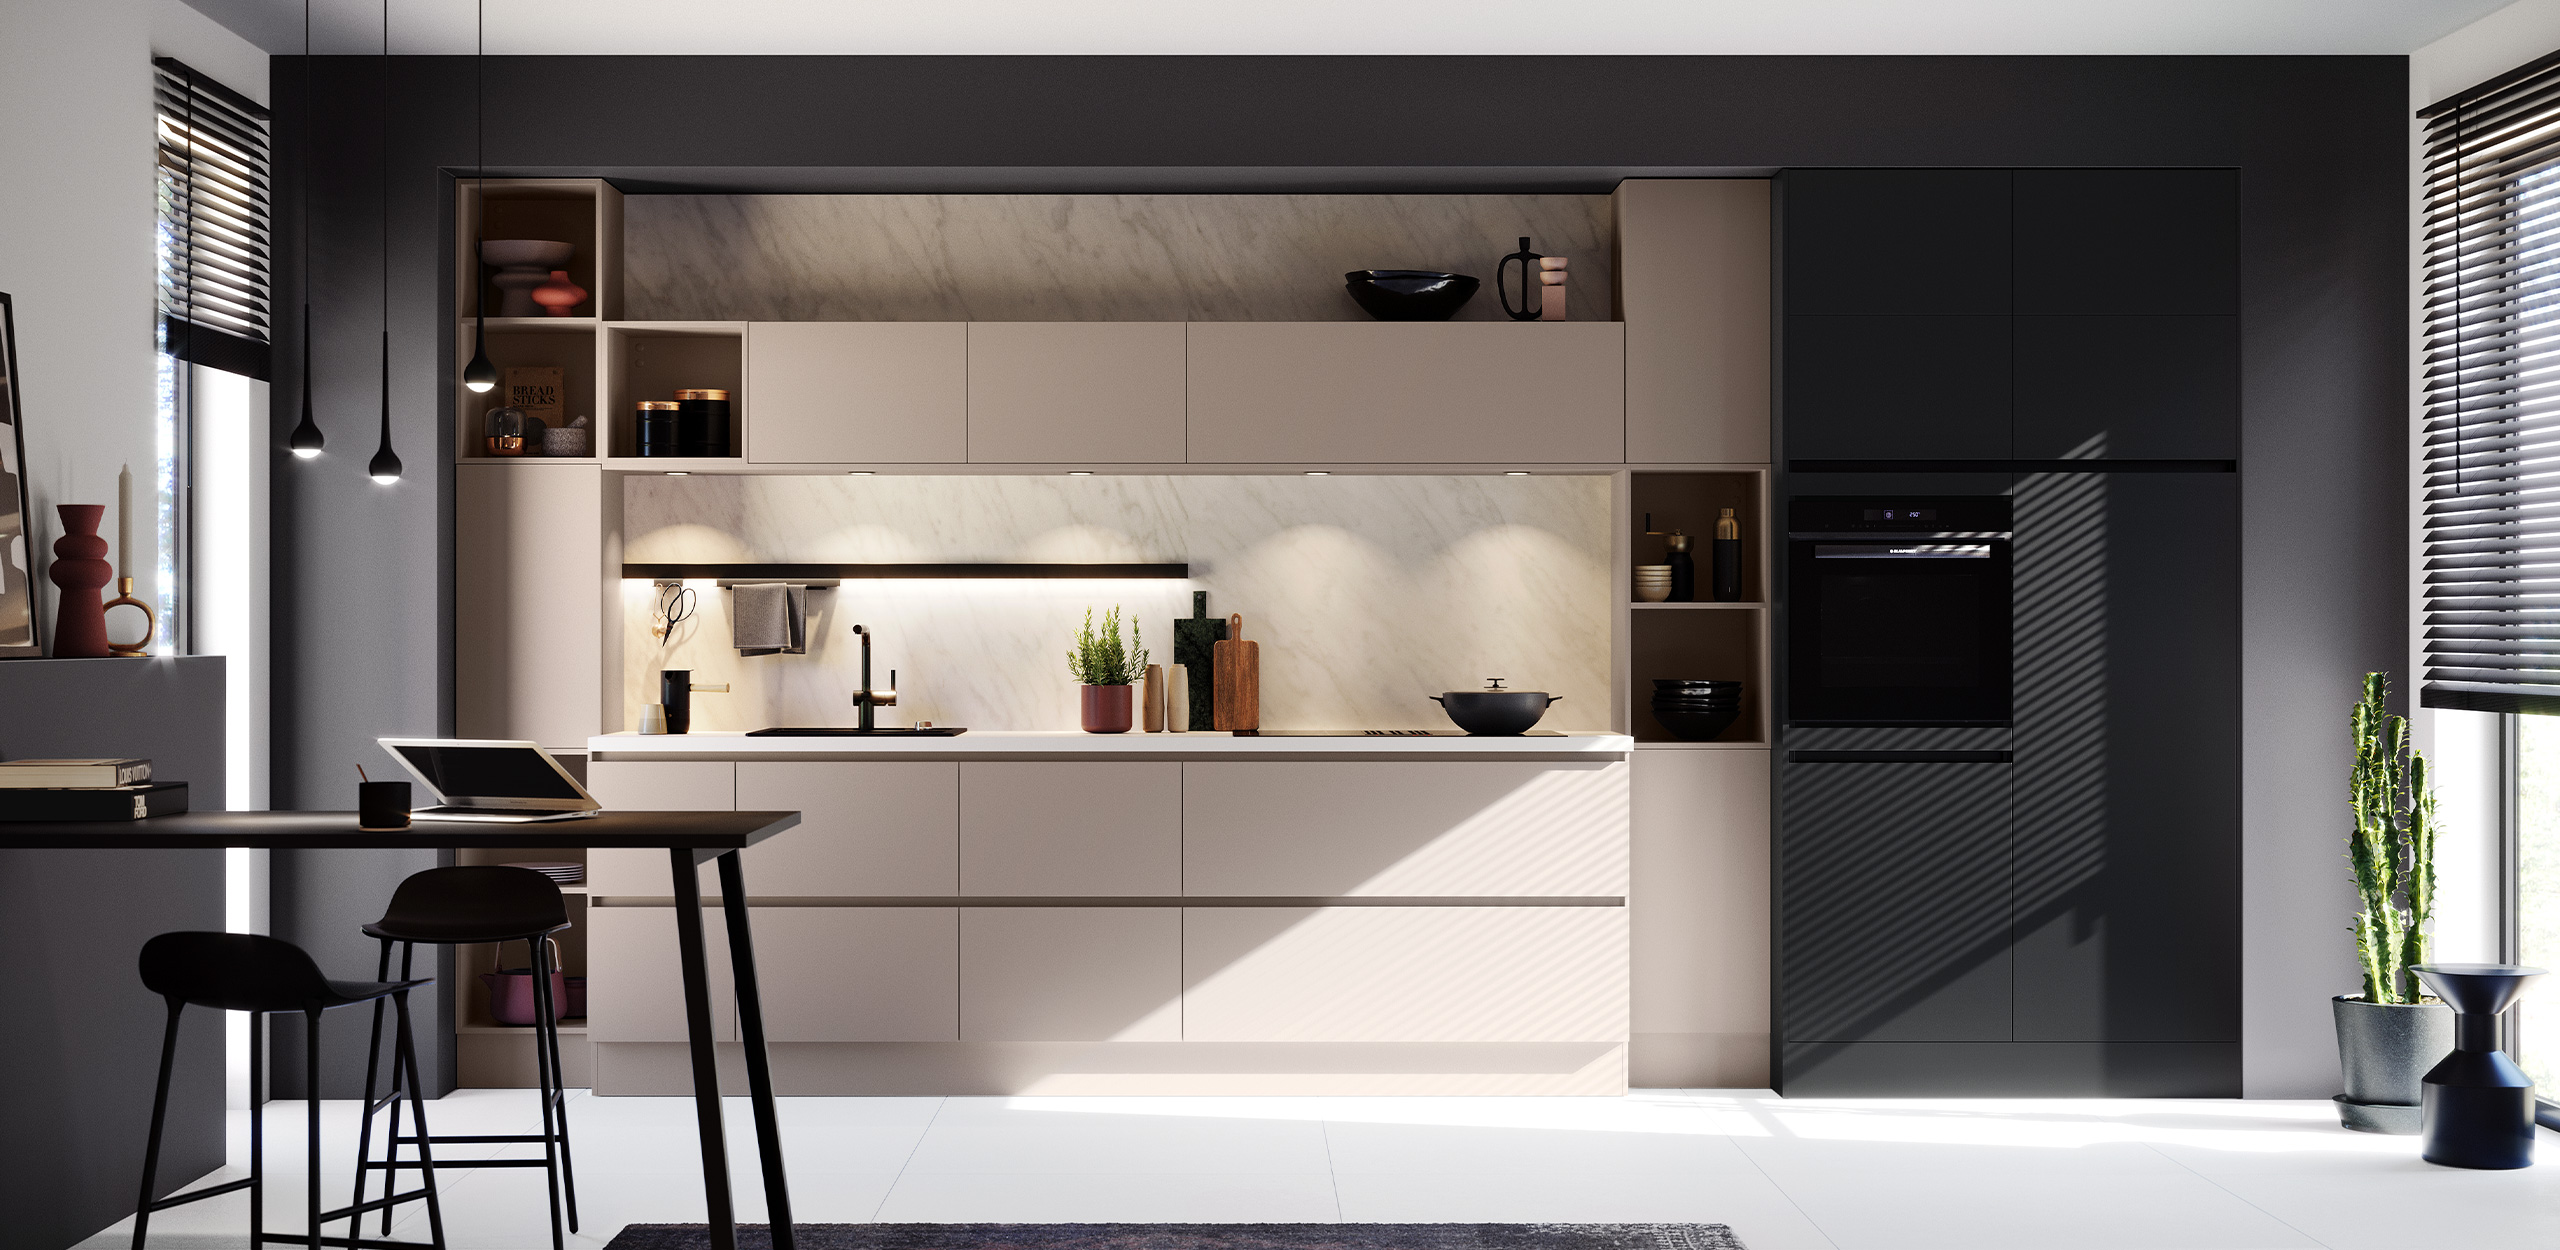 Vista completa de la cocina concept130 UNO-GL Cashmere UNO-GL Black: en primer plano, mesa elevada con taburetes de bar, sutilmente iluminada con focos.